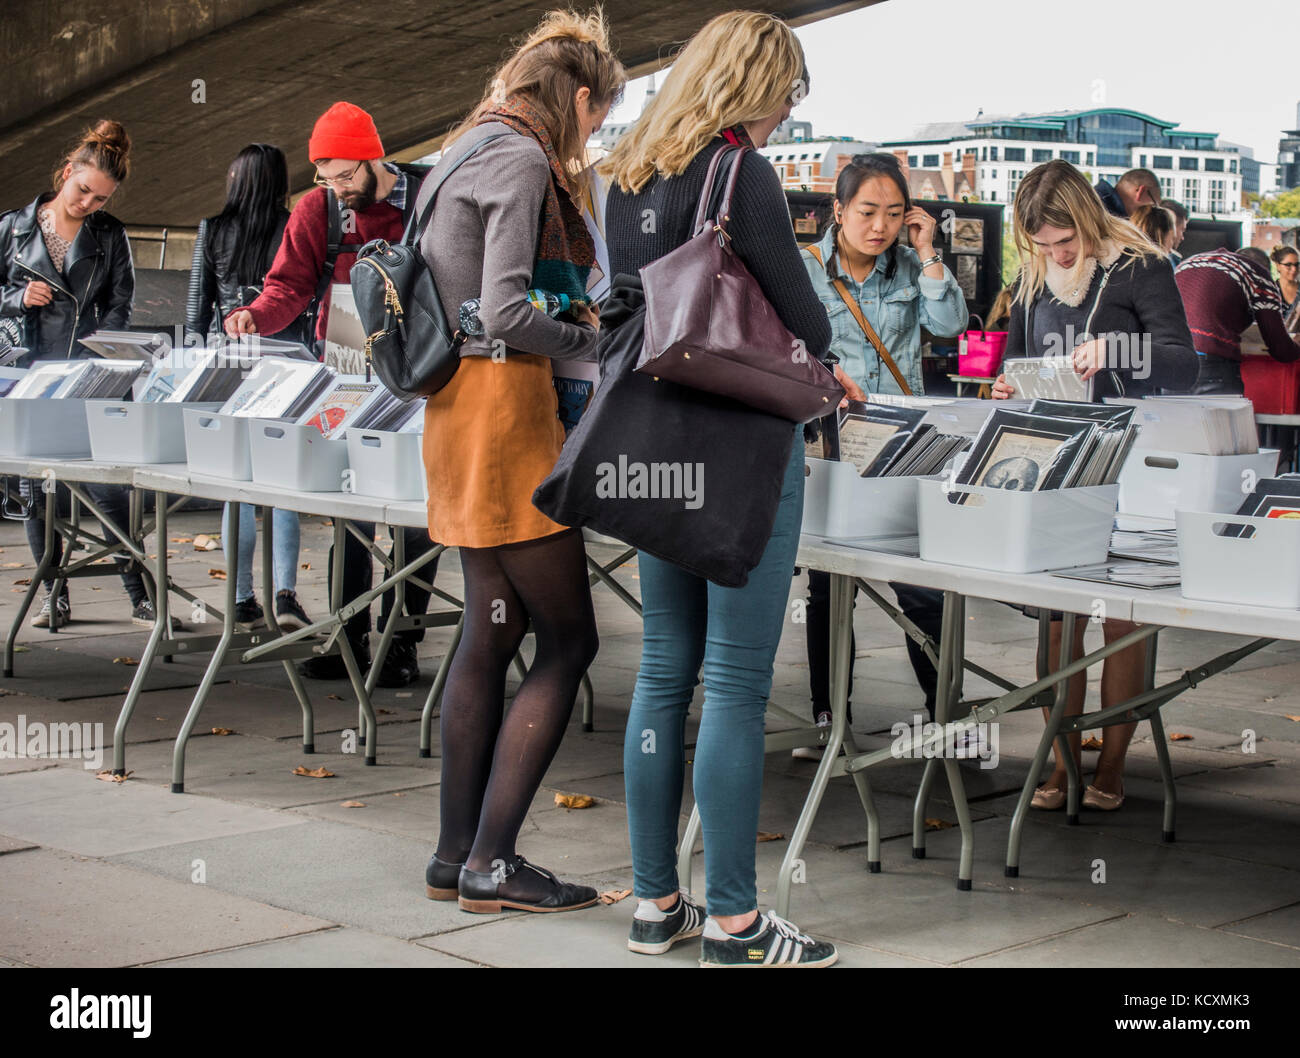 Les gens naviguant dans la gamme de livres et gravures à Rive Sud / Southbank book market, sous le pont de Waterloo, à côté de la Tamise, Londres, Angleterre, Royaume-Uni. Banque D'Images